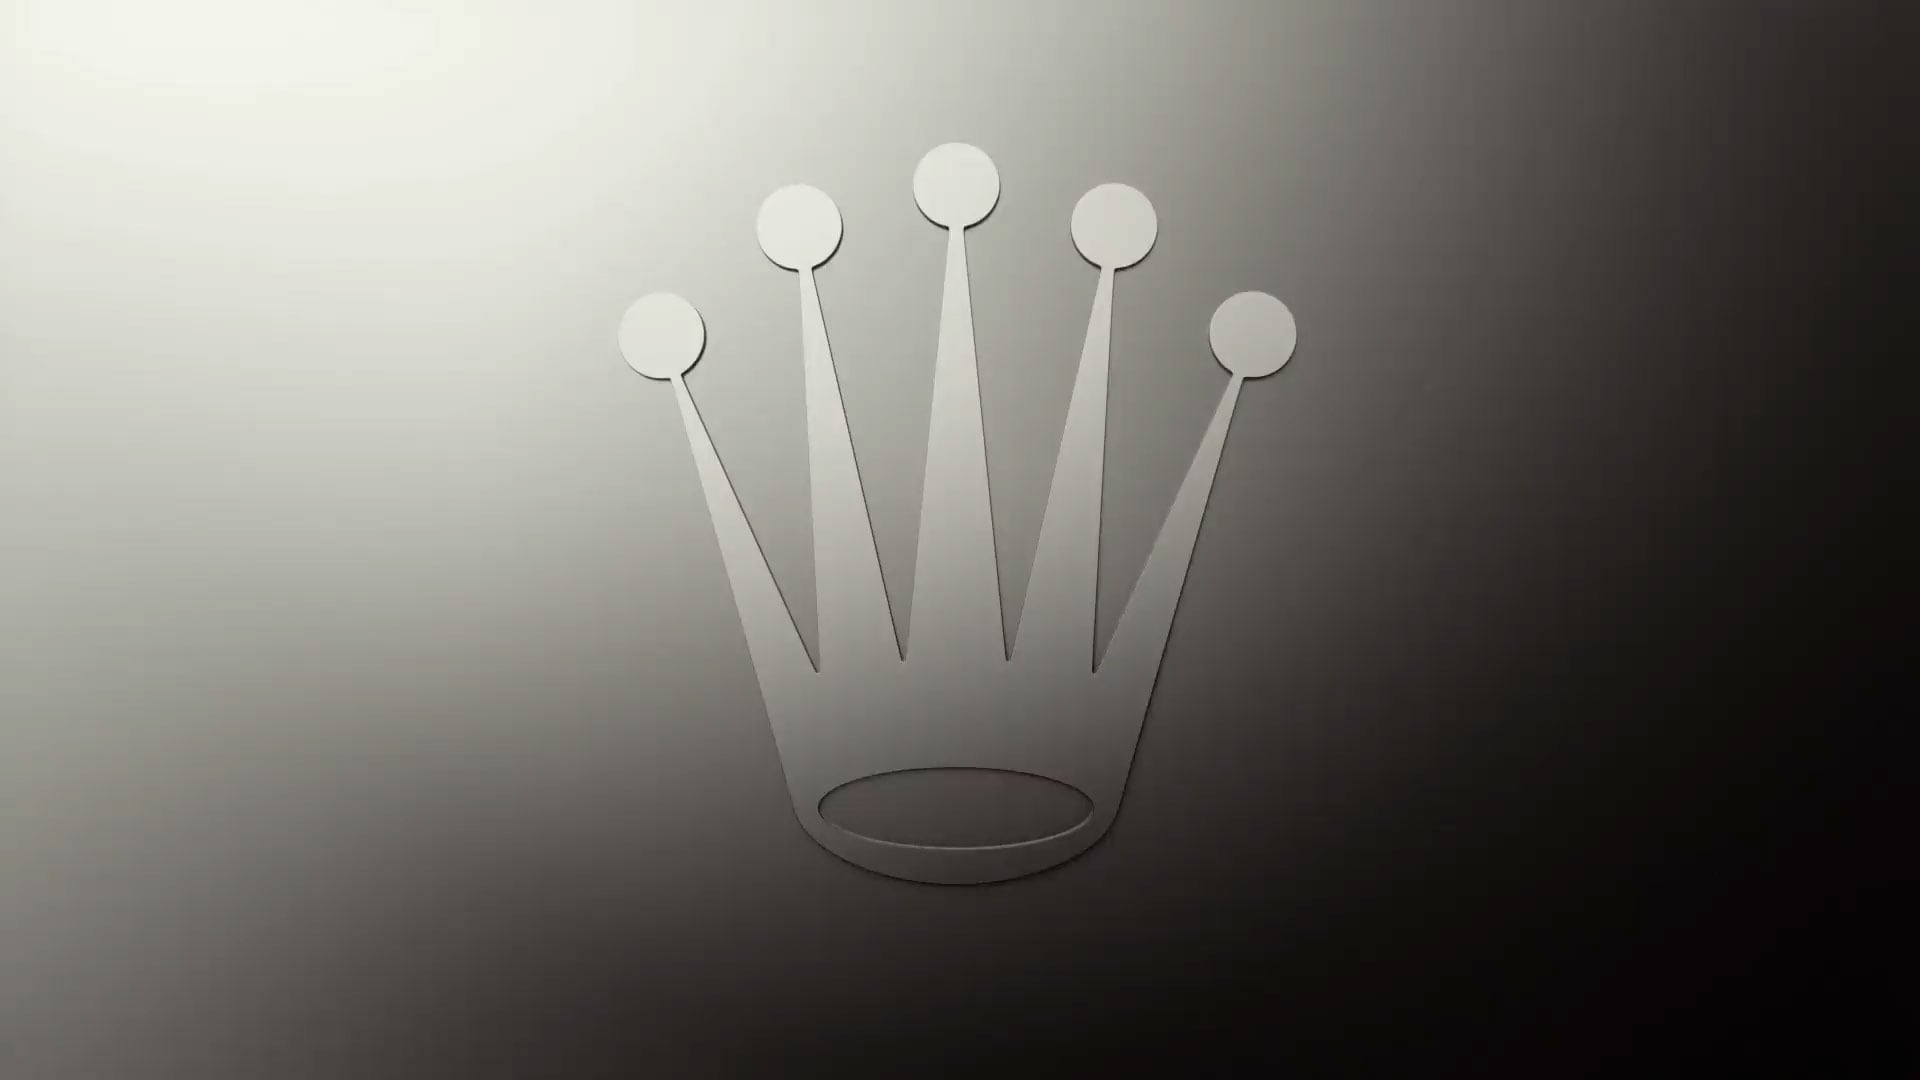 rolex crown